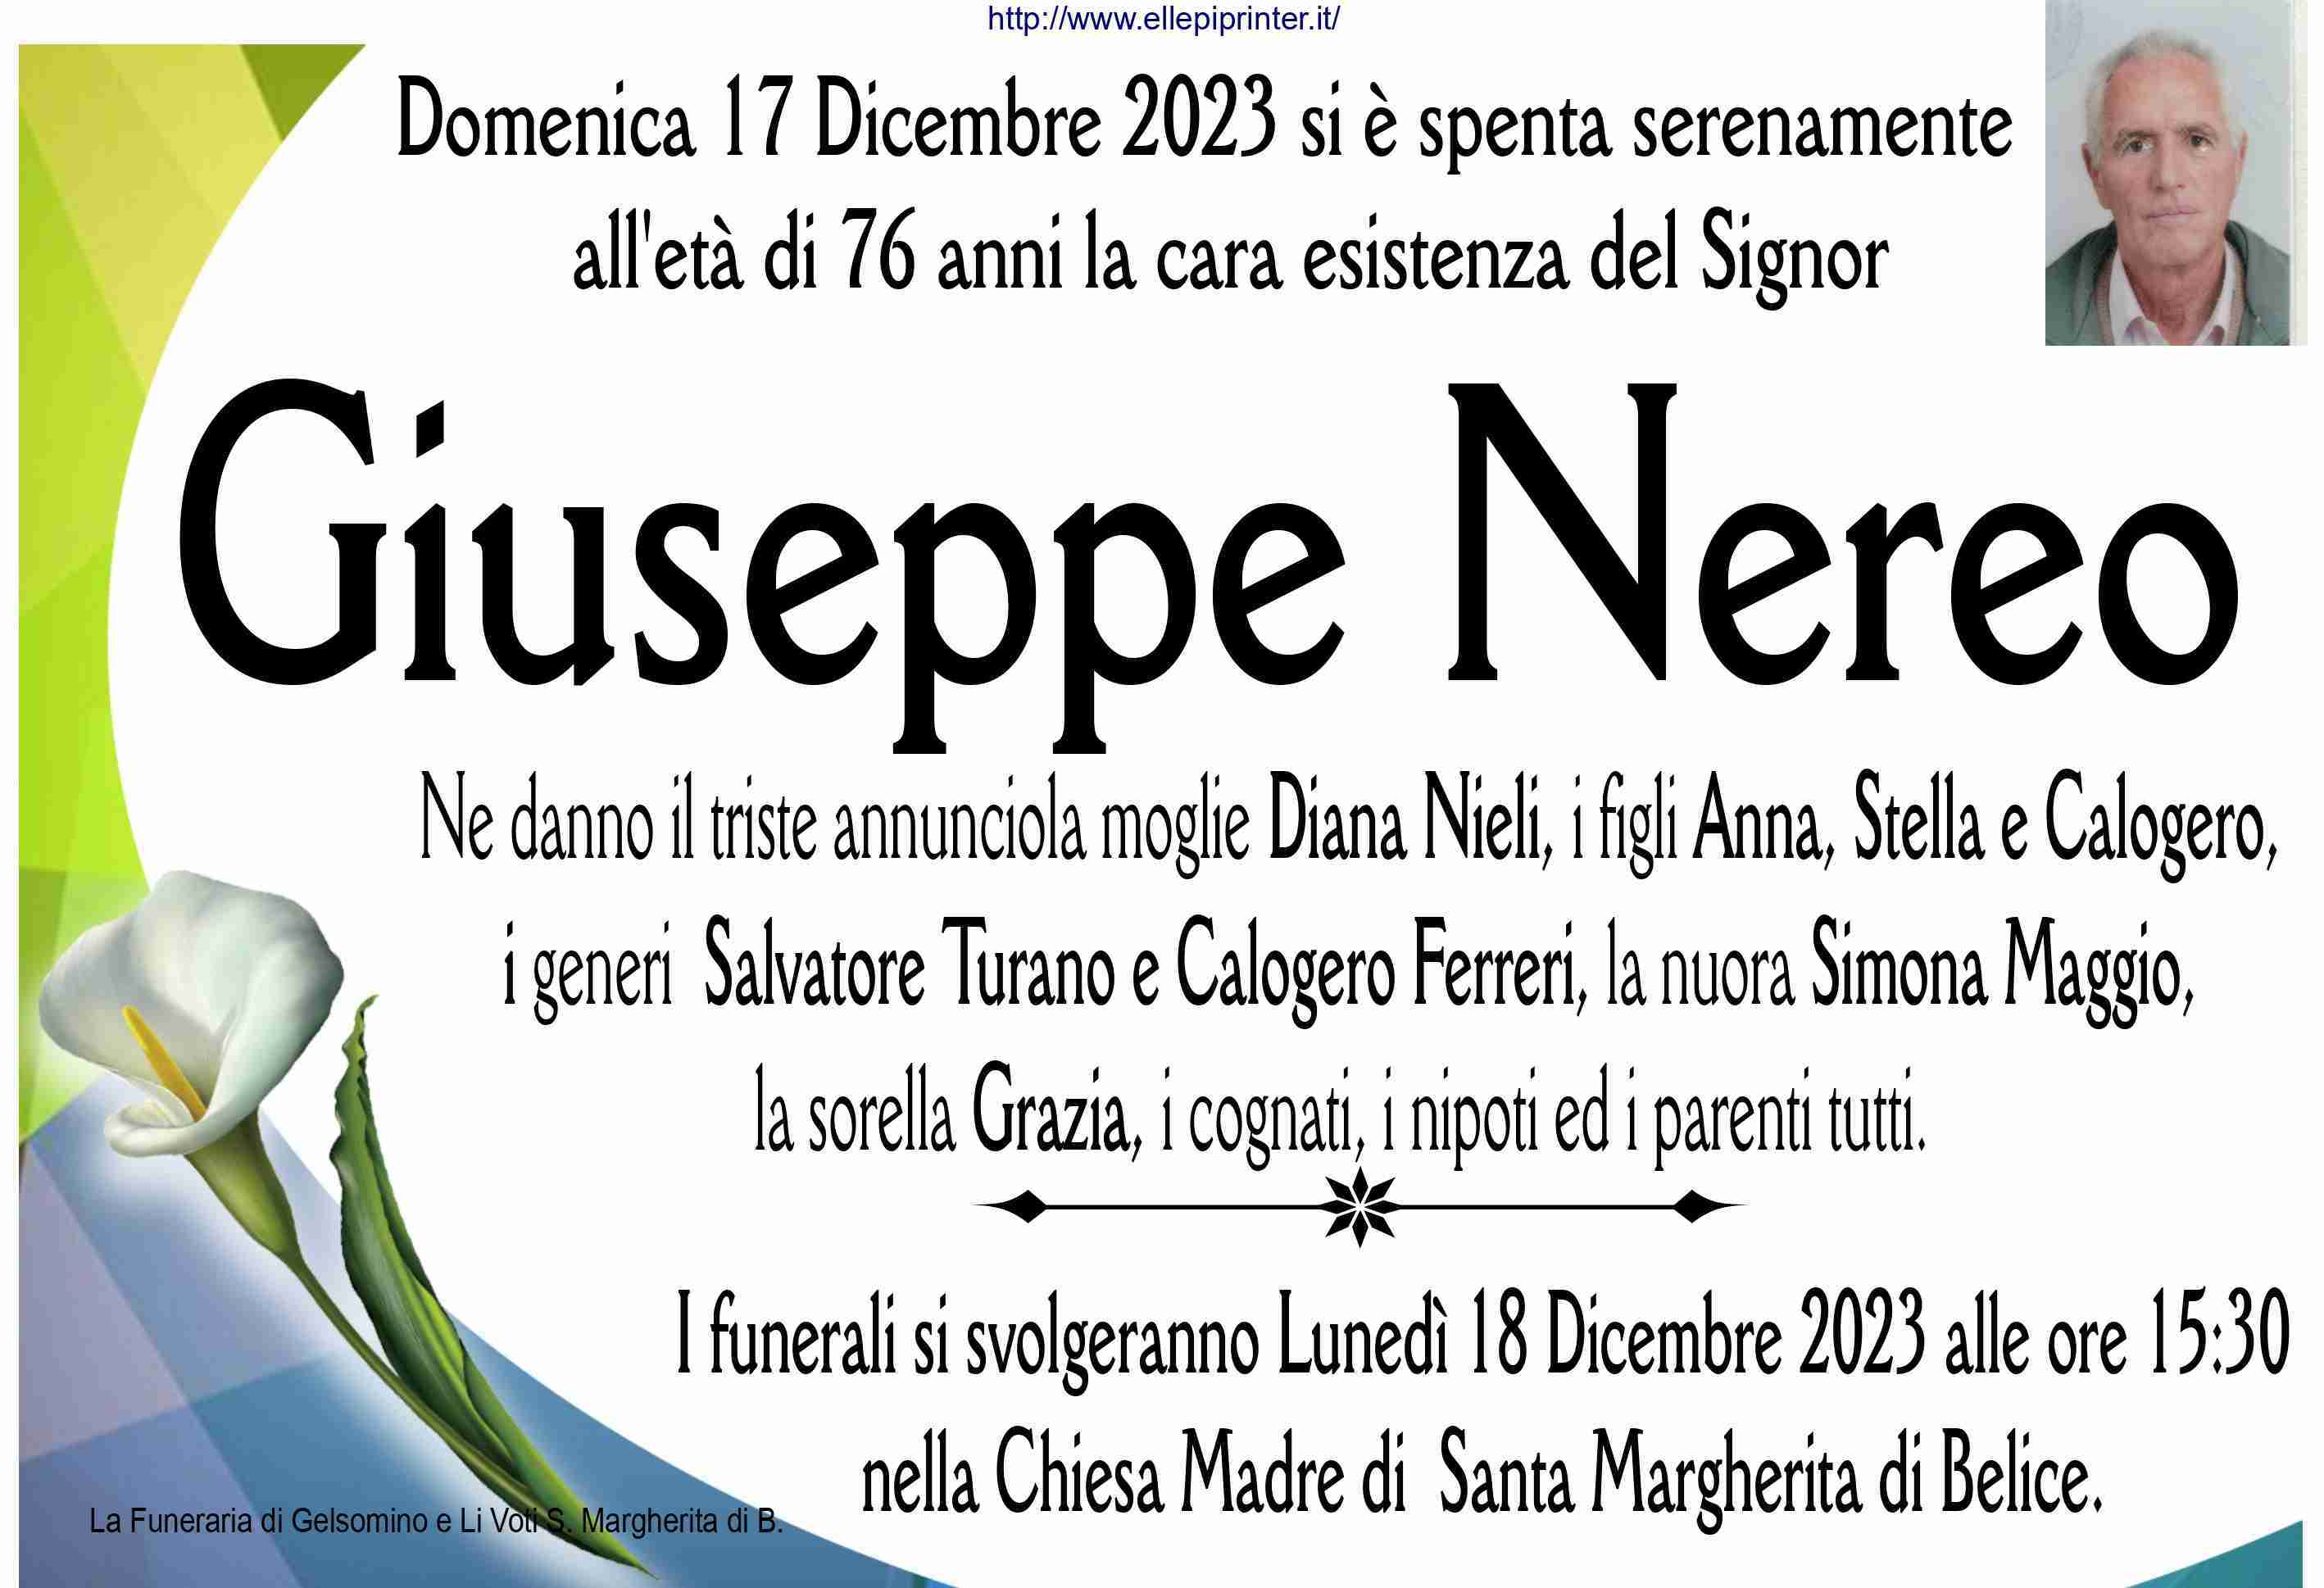 Giuseppe Nereo